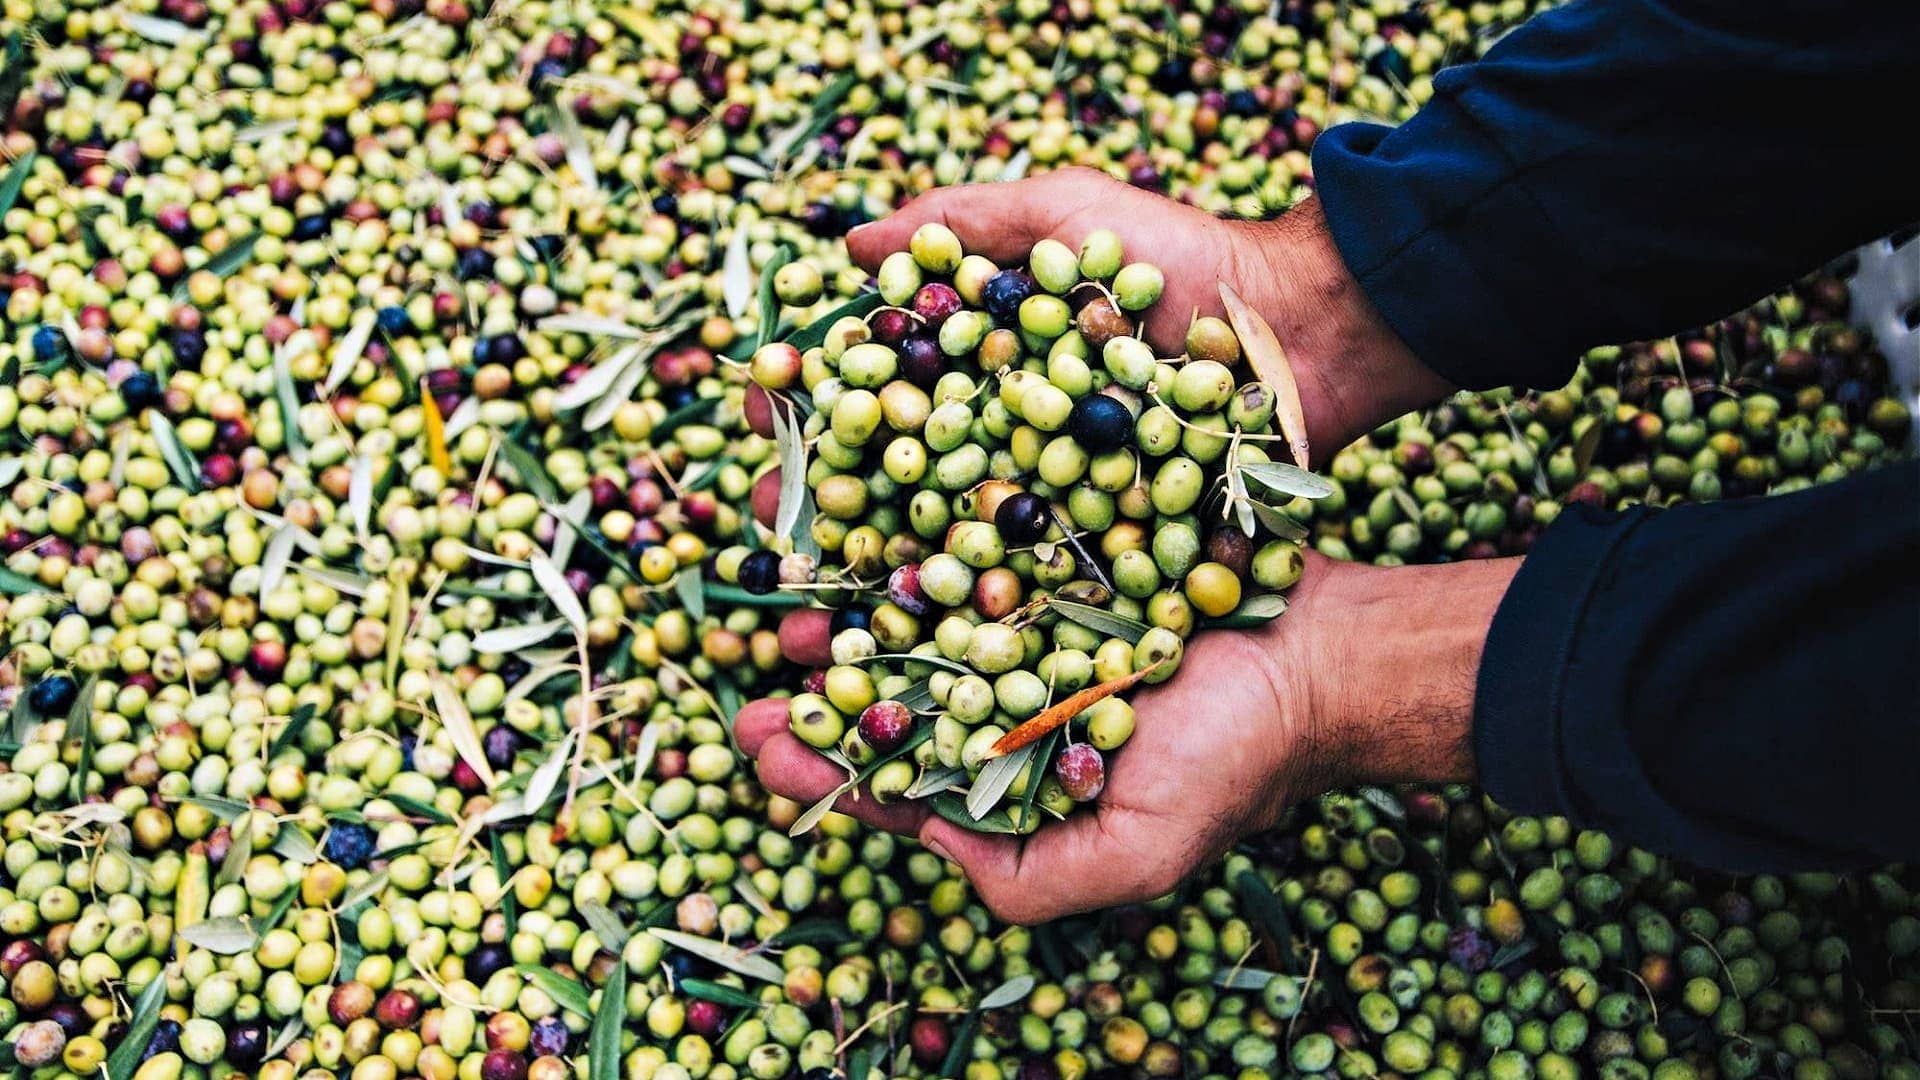 norteamérica-los-mejores-aceites-de-oliva-concursos-premios-a-la-producción-para-productores-de-california-validar-altos-estándares-de-aove-olive-olive-oil-times